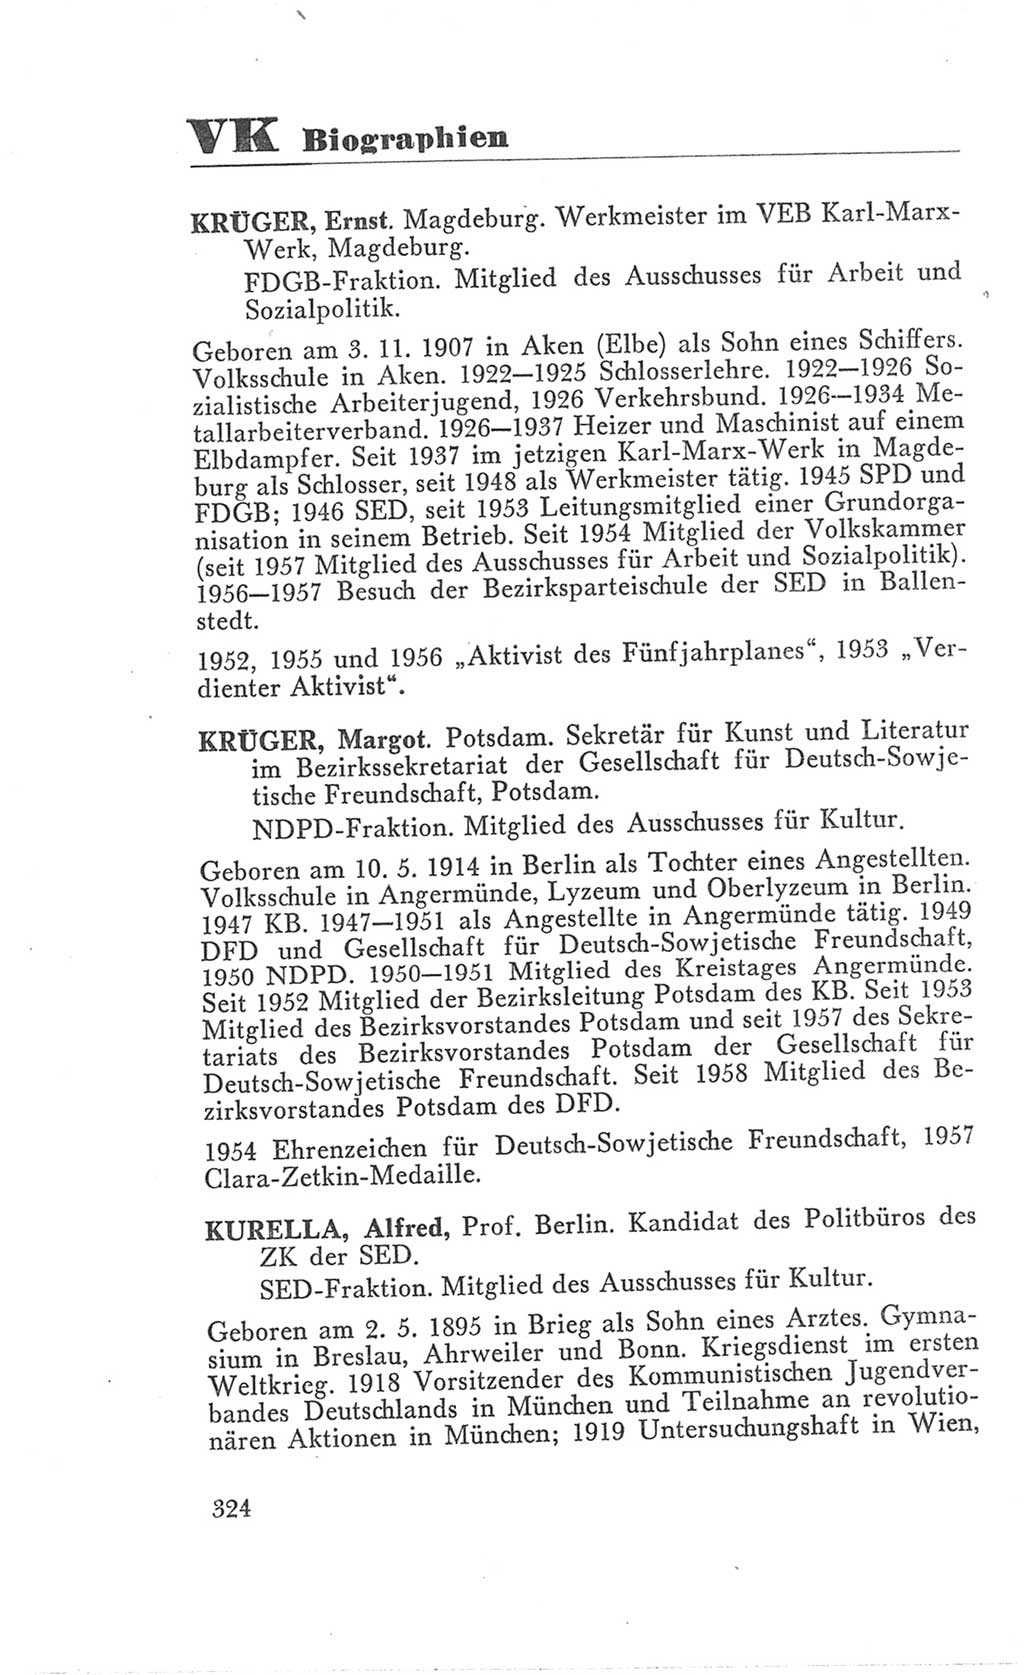 Handbuch der Volkskammer (VK) der Deutschen Demokratischen Republik (DDR), 3. Wahlperiode 1958-1963, Seite 324 (Hdb. VK. DDR 3. WP. 1958-1963, S. 324)